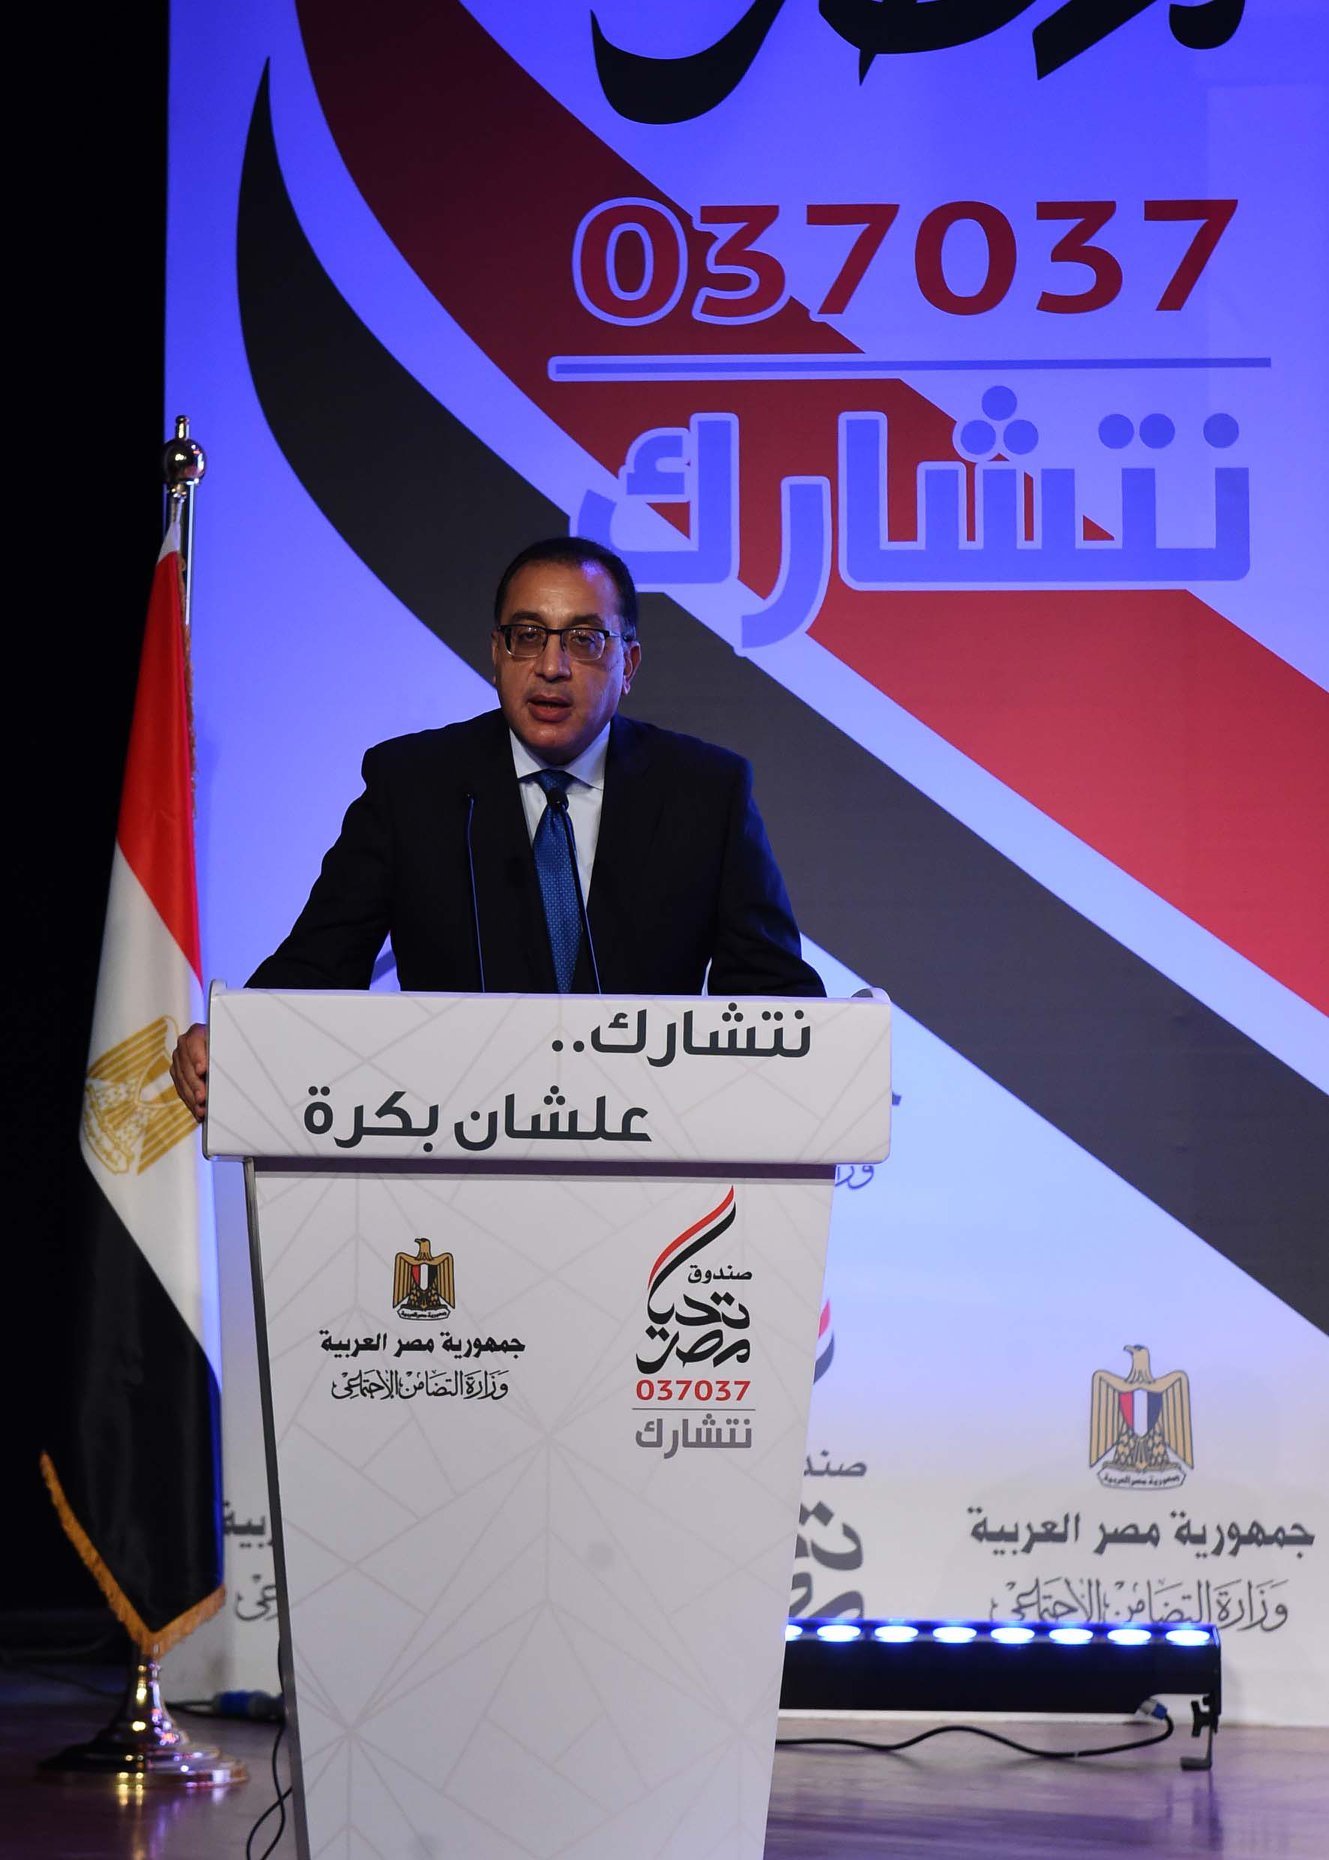   مدبولى: وطن مُزدهر وراء مبادرة الرئيس لتأسيس «تحيا مصر»